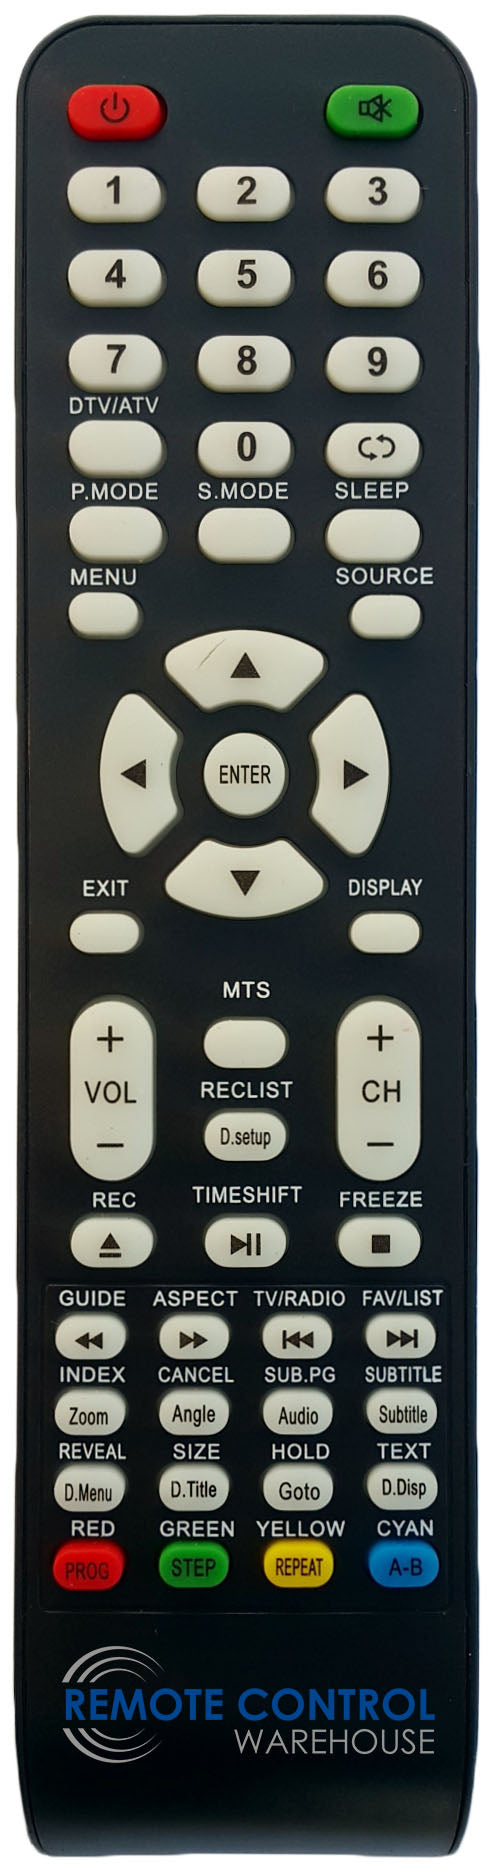 NEONIQ TL1601 HD LED LCD TV REPLACEMENT REMOTE CONTROL